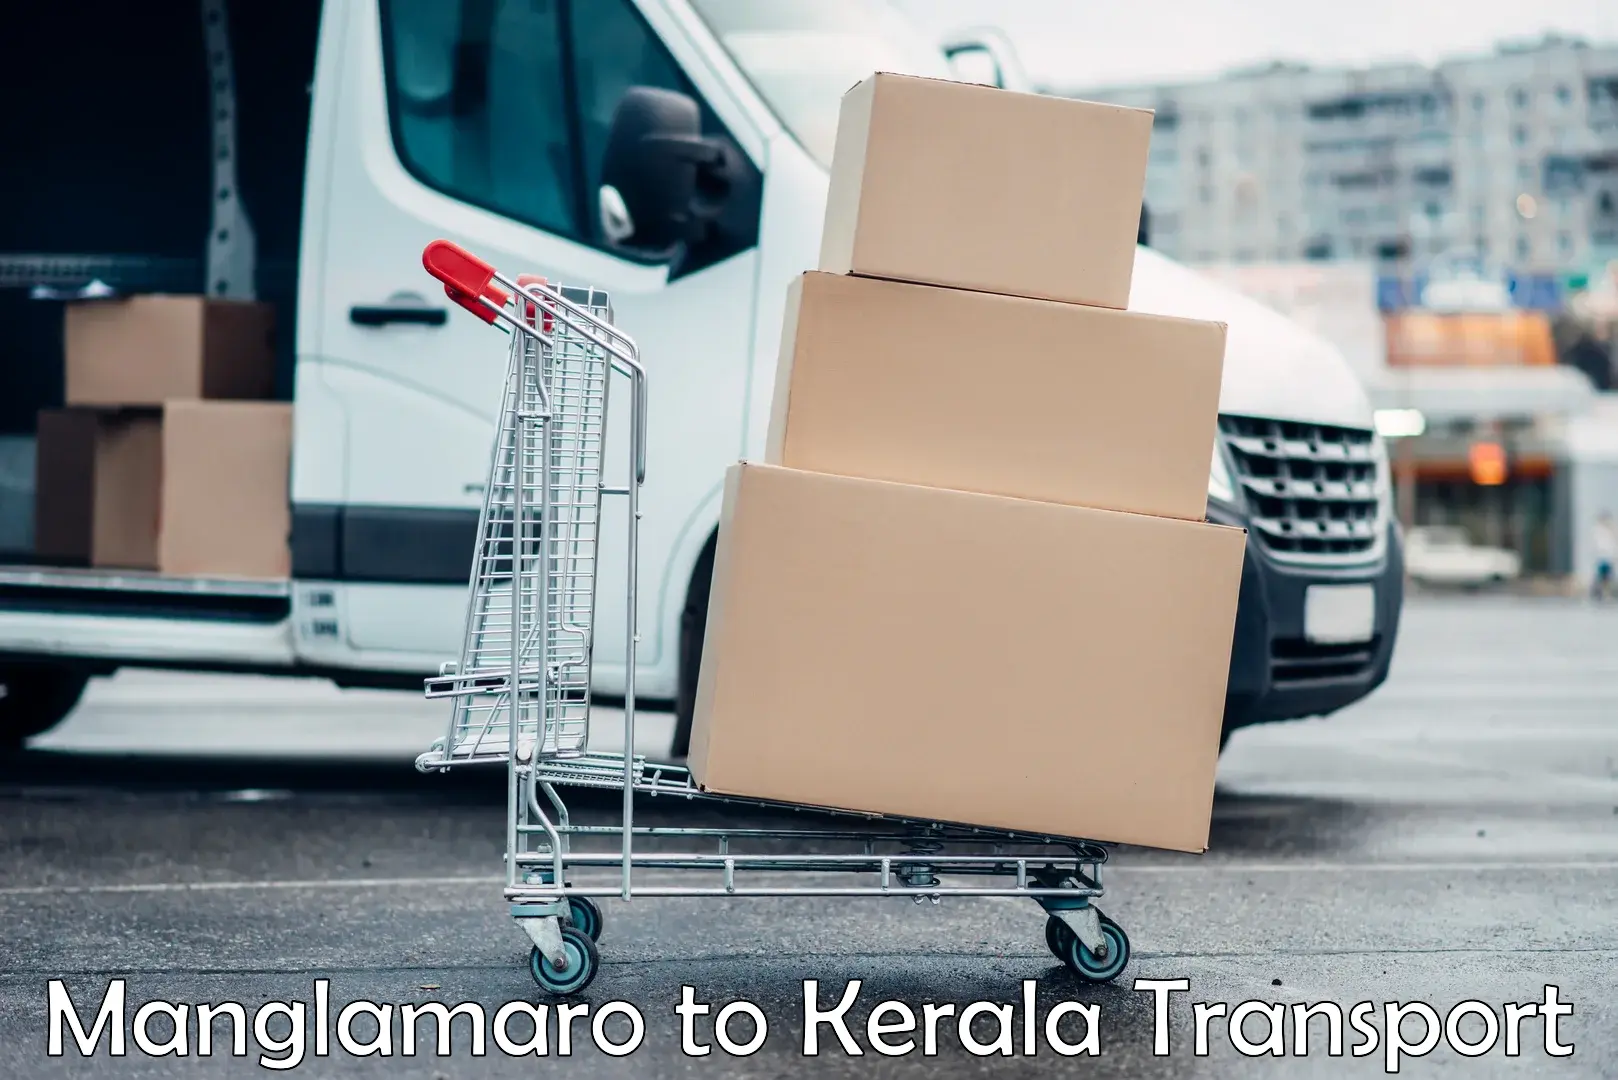 Land transport services Manglamaro to Kerala